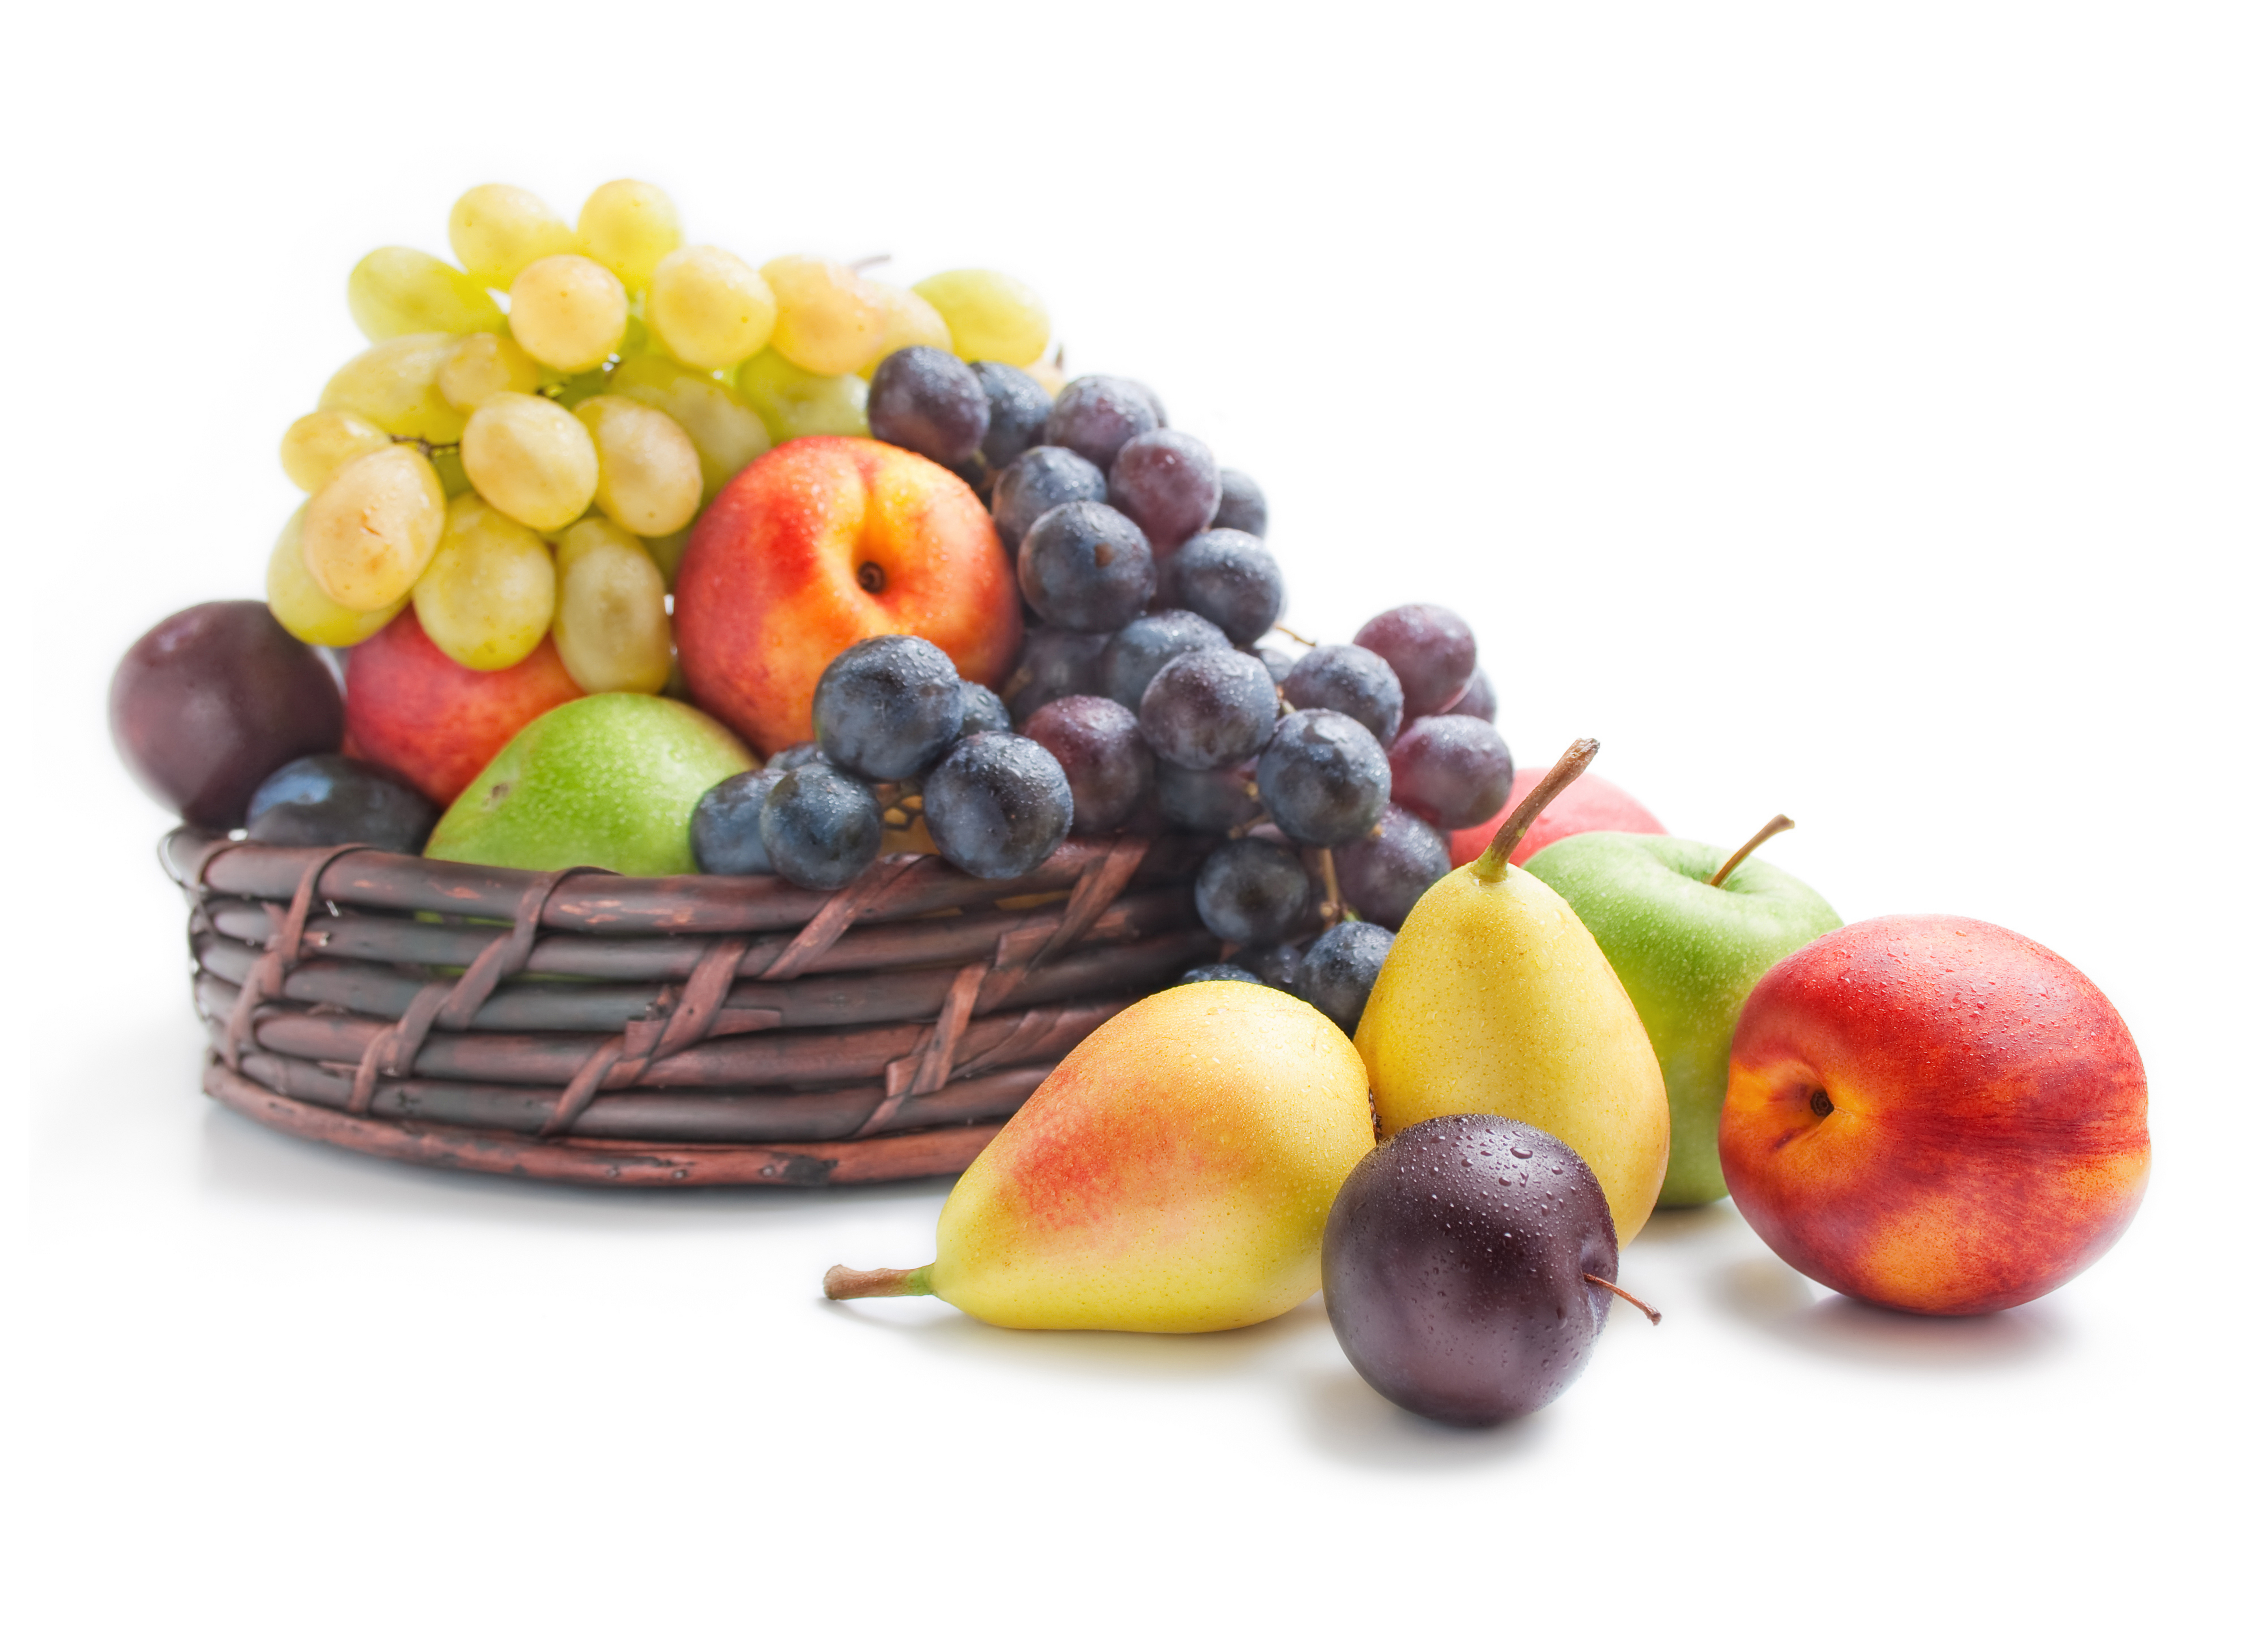 Eternal piece fruits. Фрукты и ягоды. Яблоко виноград на белом фоне. Натюрморт. Яблоки груши виноград.